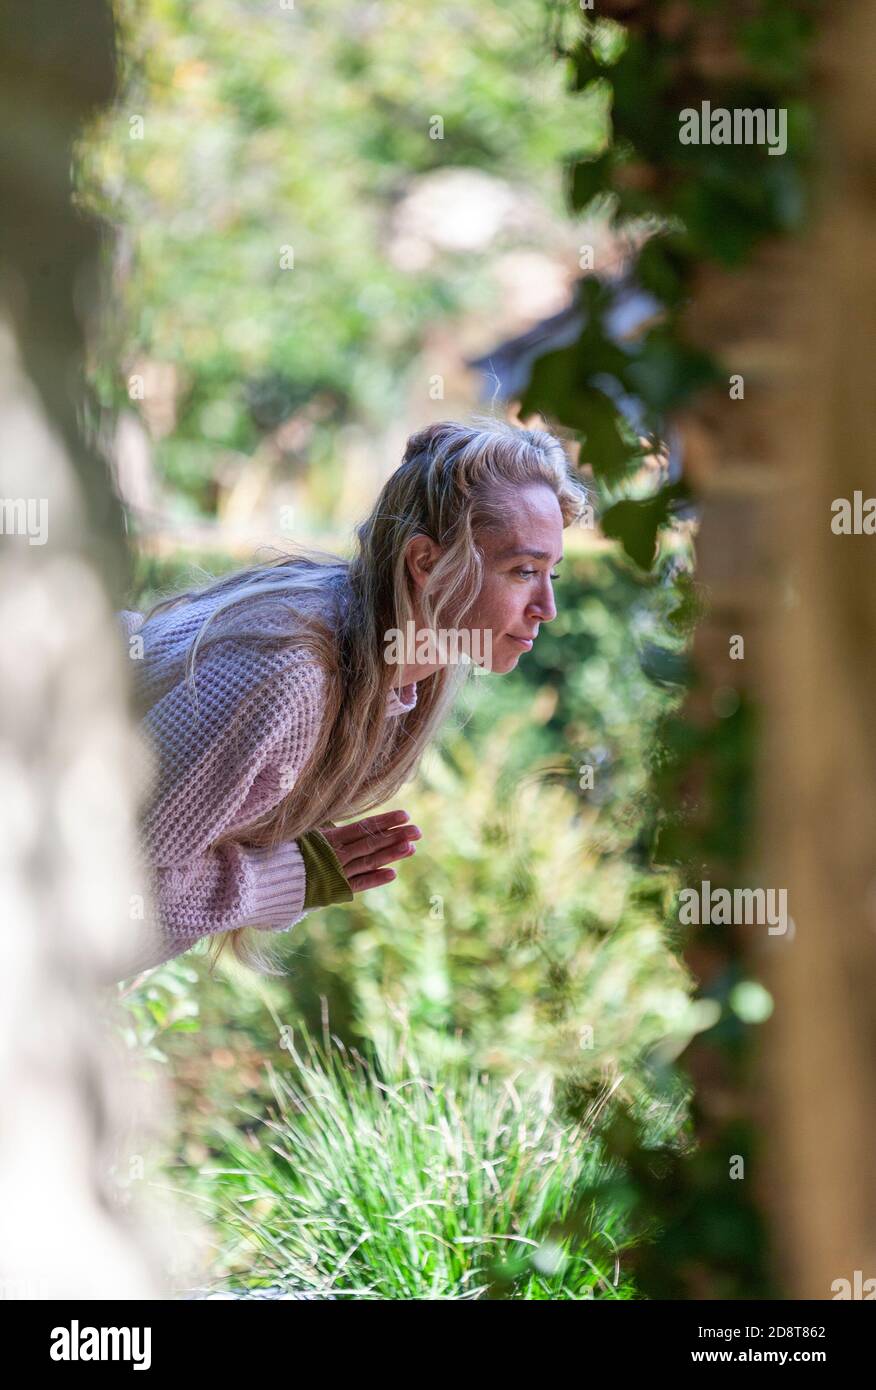 Femme blonde, quarante ans pratiquant le yoga pose dans un environnement extérieur, Londres, Angleterre Banque D'Images